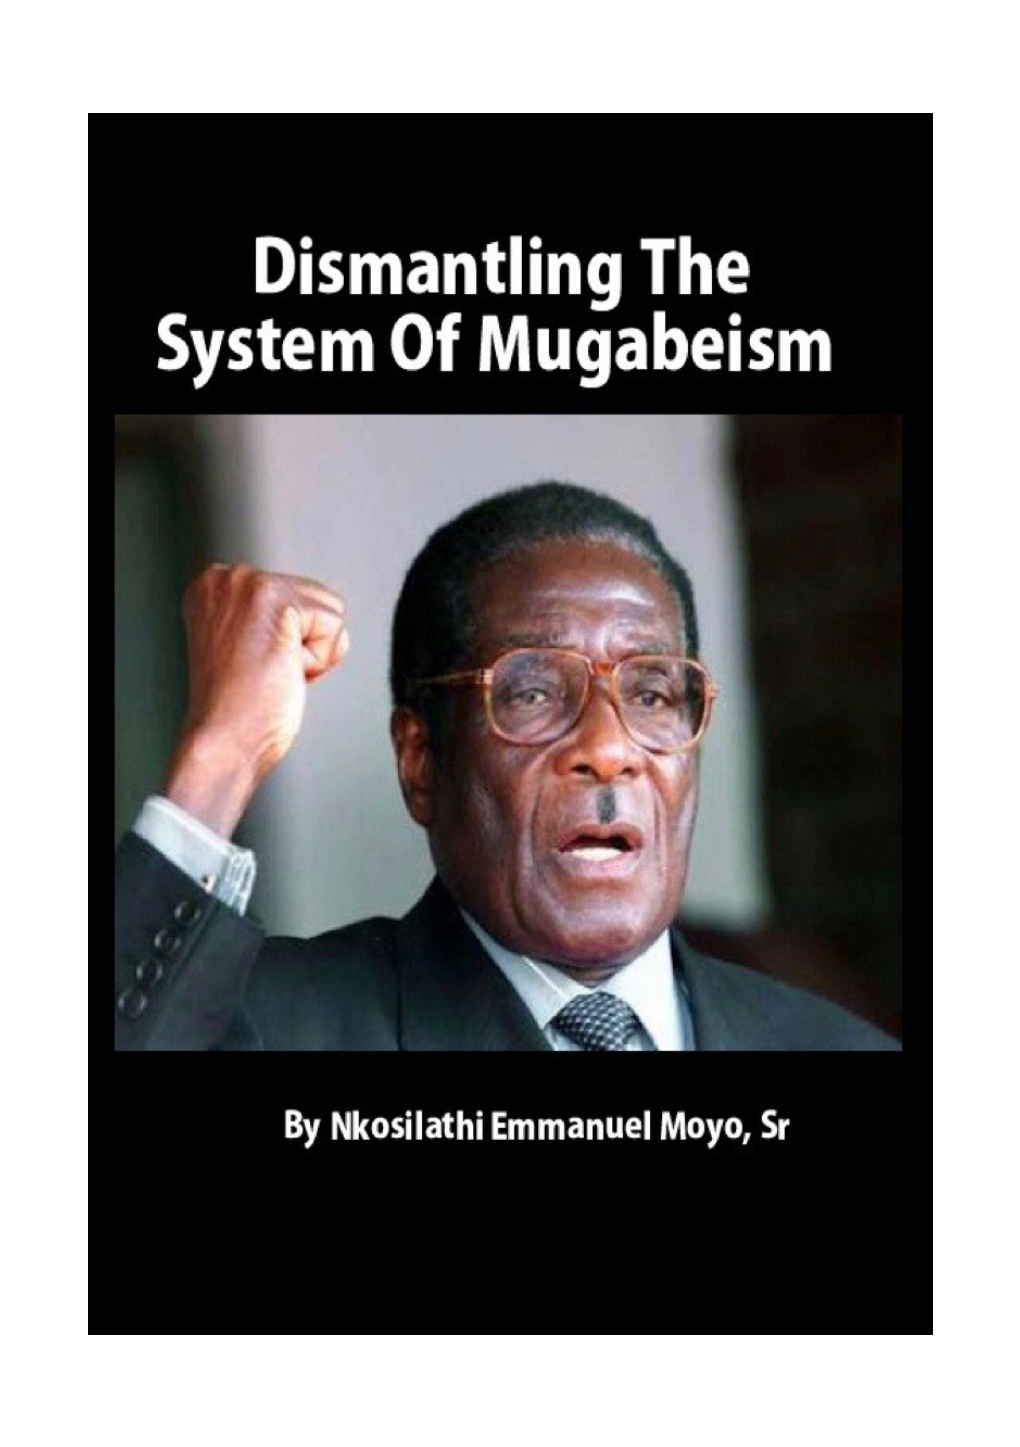 Dismantling the System of Mugabeism